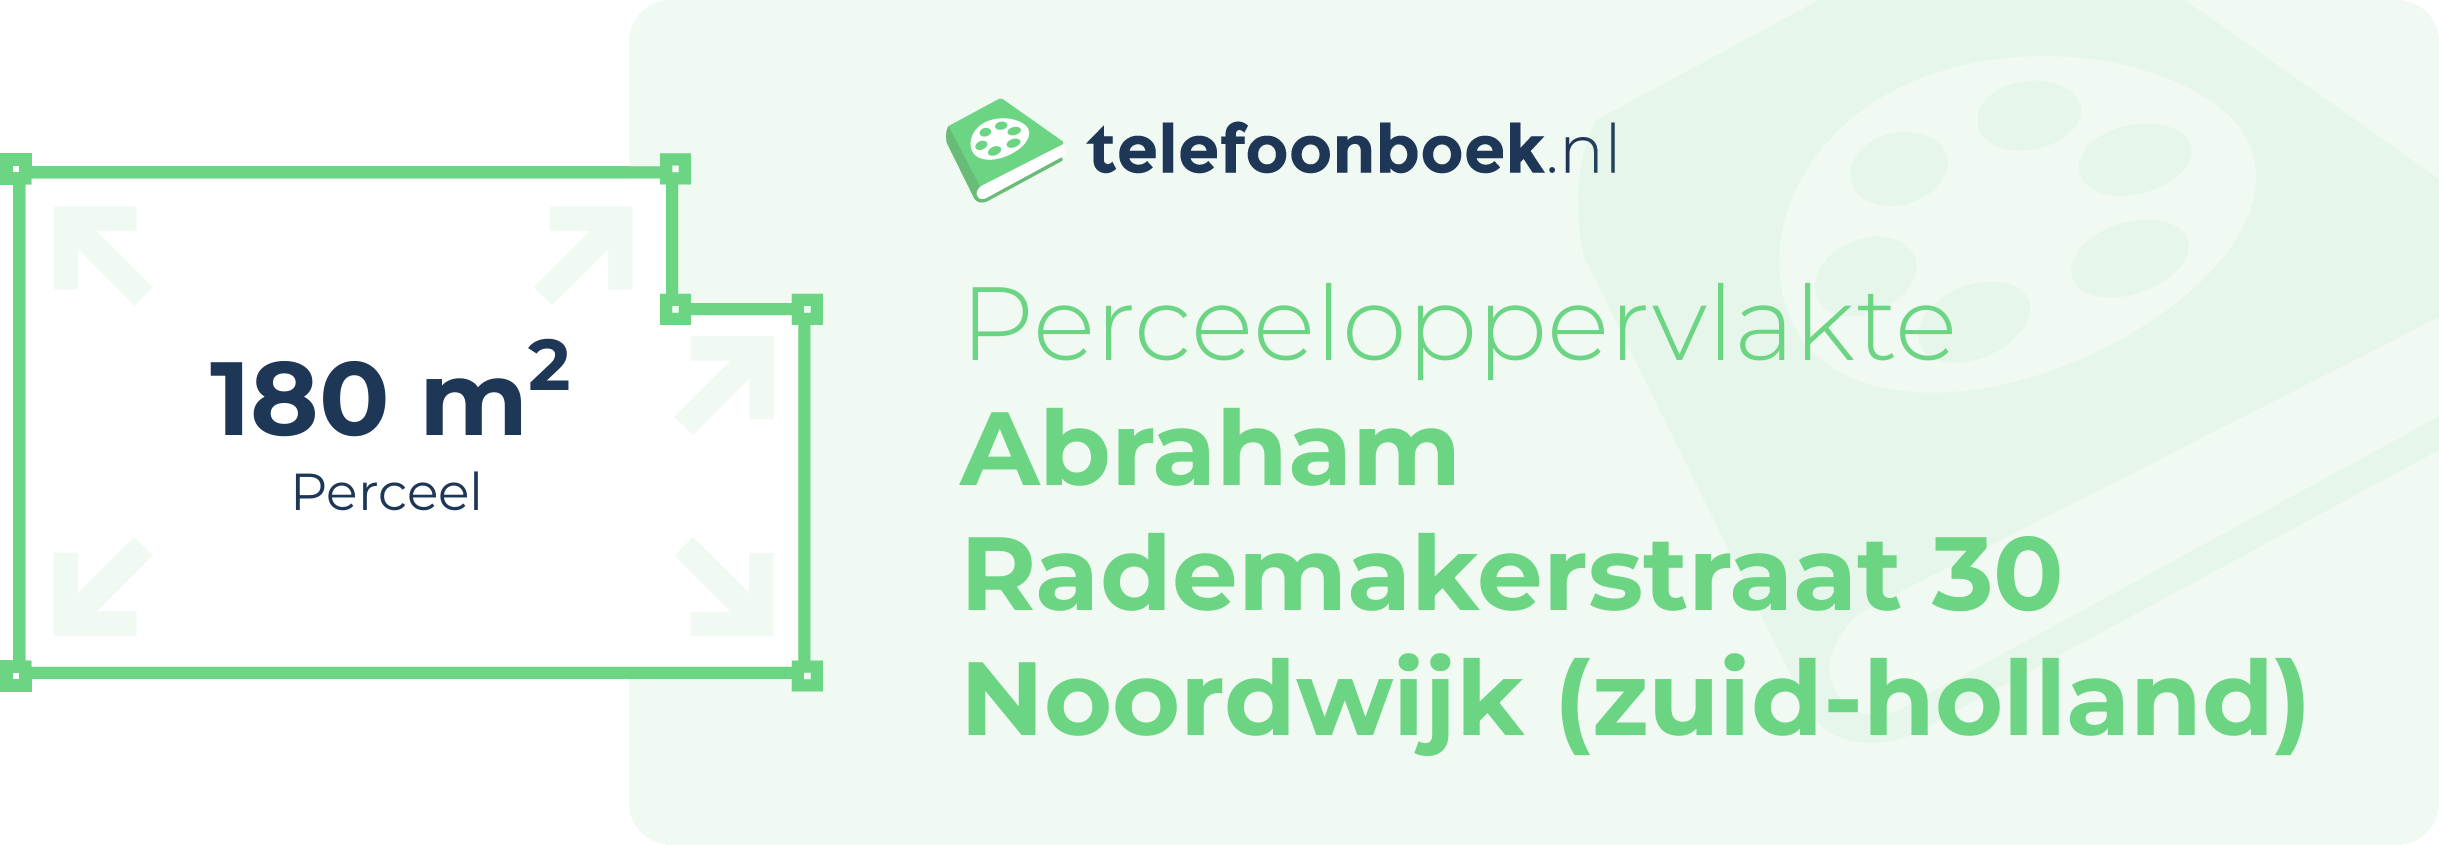 Perceeloppervlakte Abraham Rademakerstraat 30 Noordwijk (Zuid-Holland)